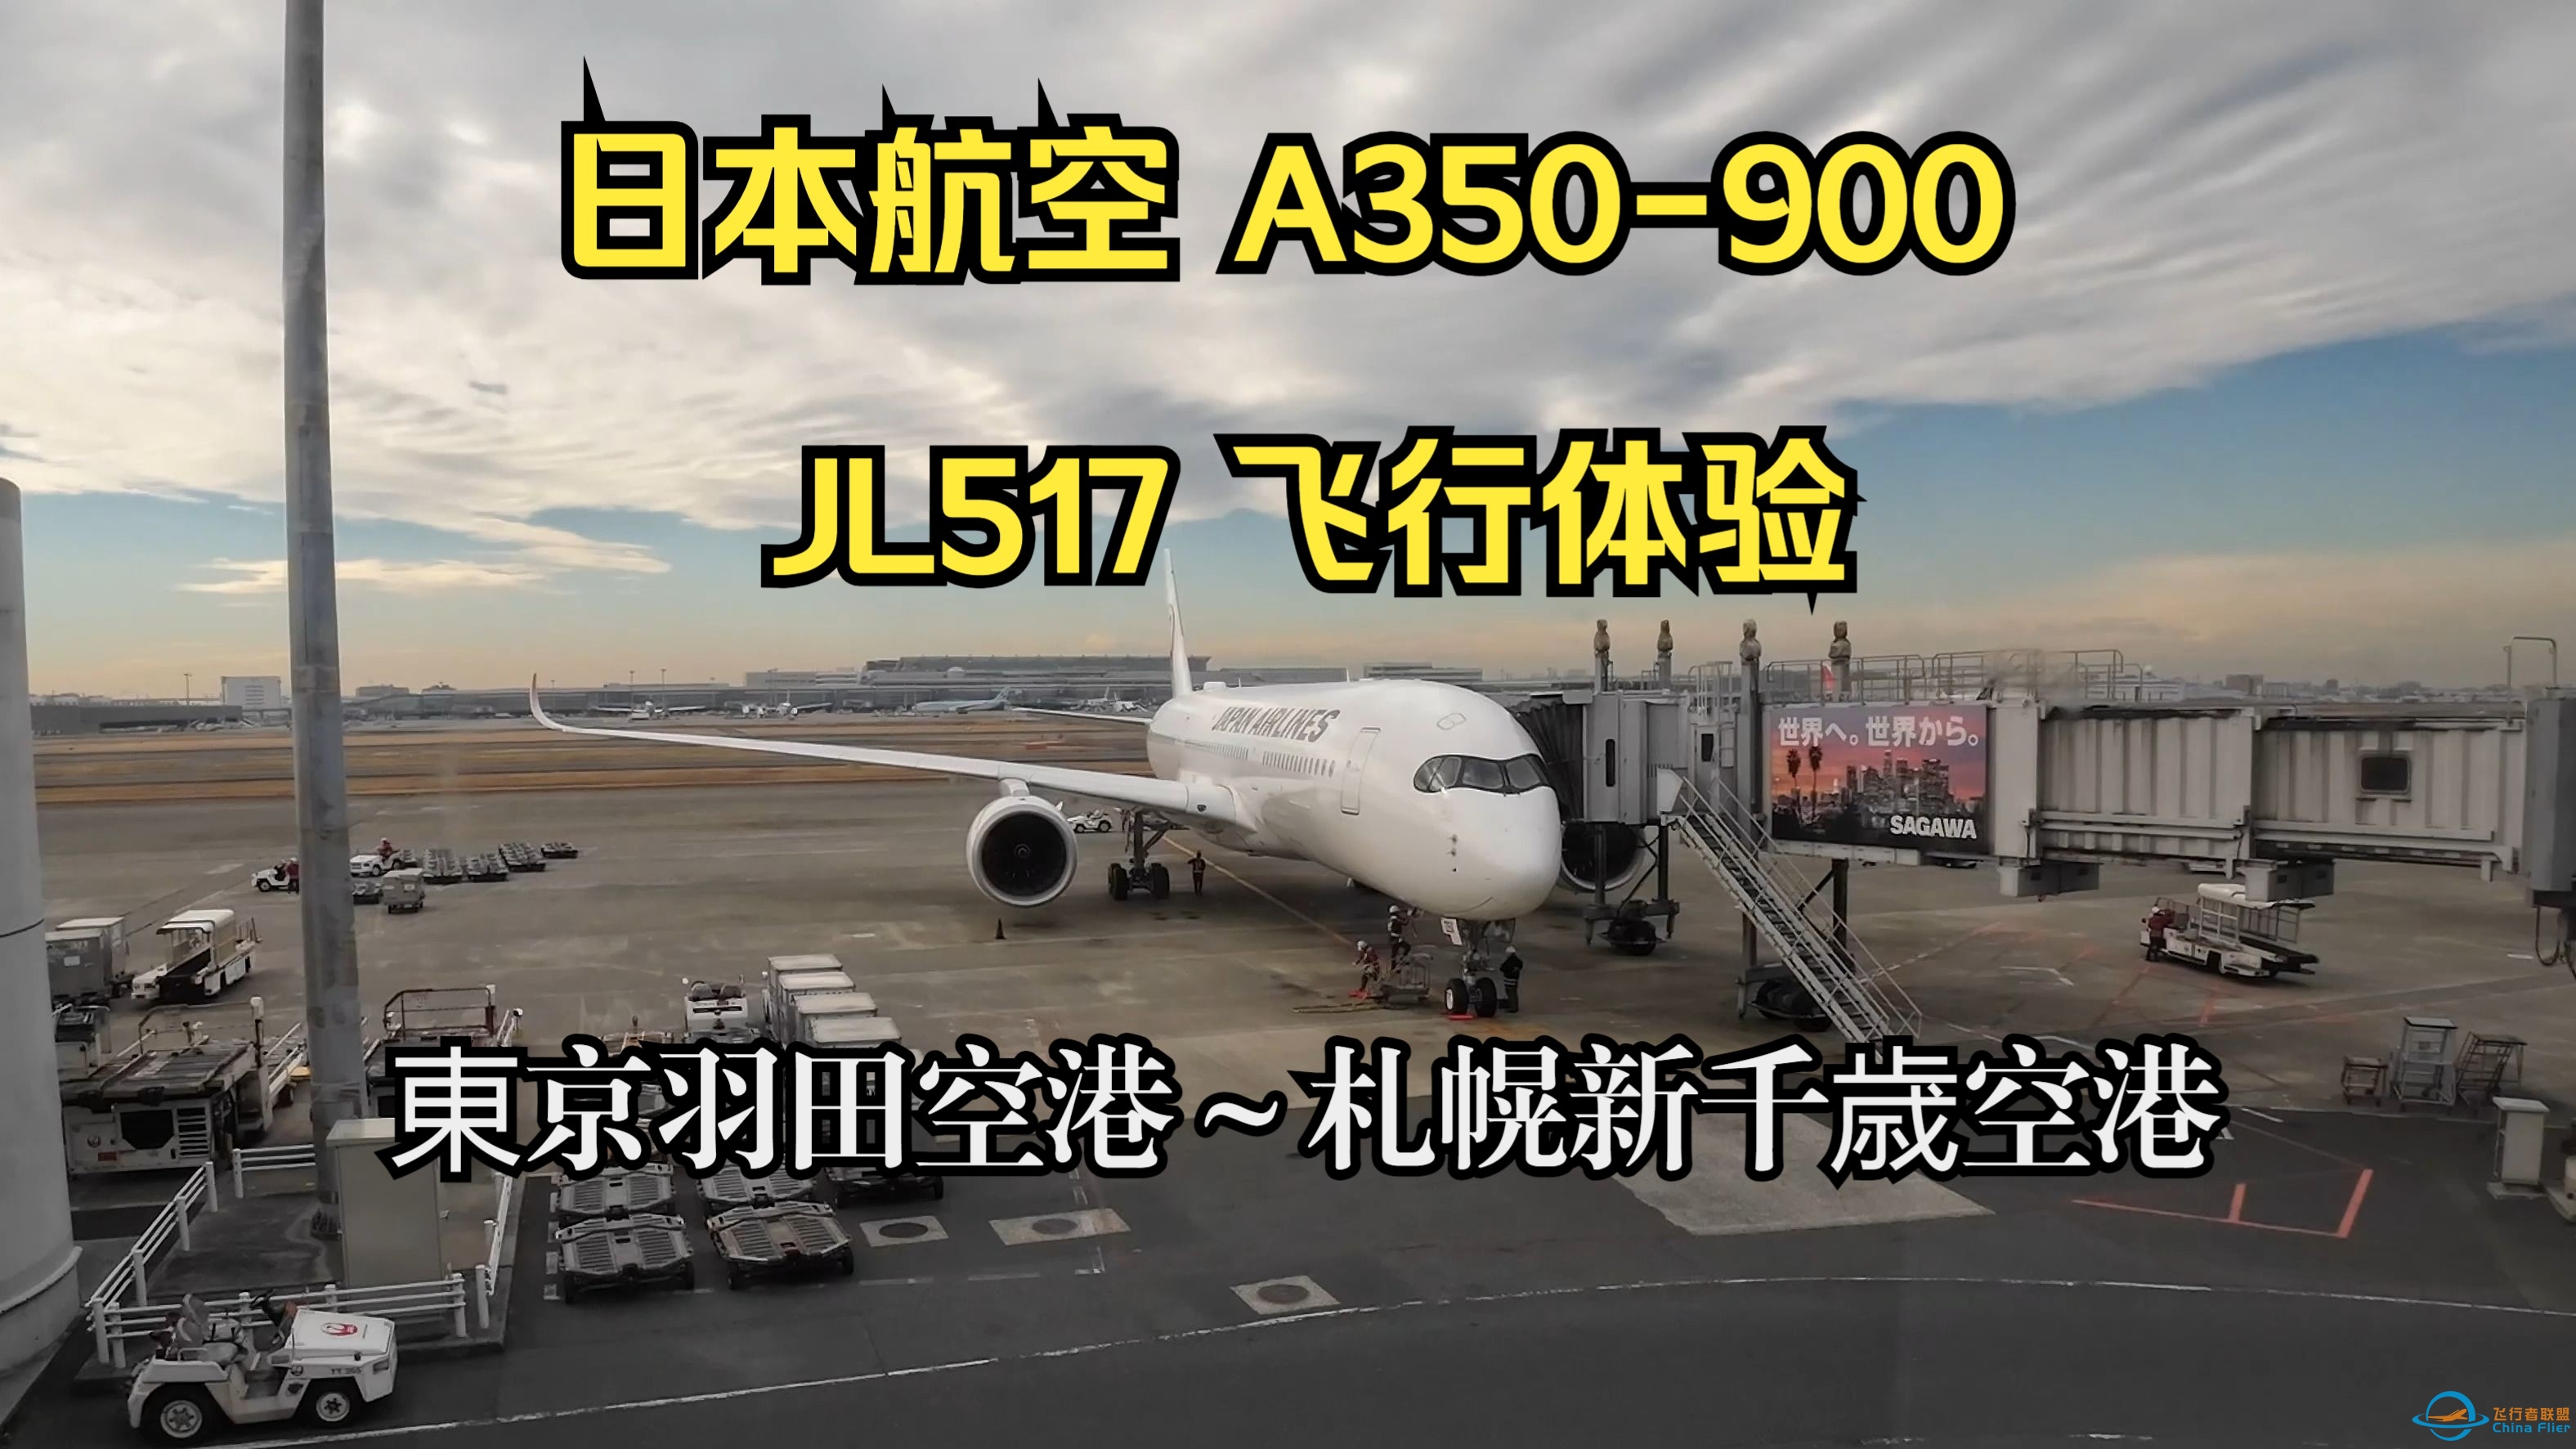 日本航空 A350-900 JL517 飞行体验-9941 